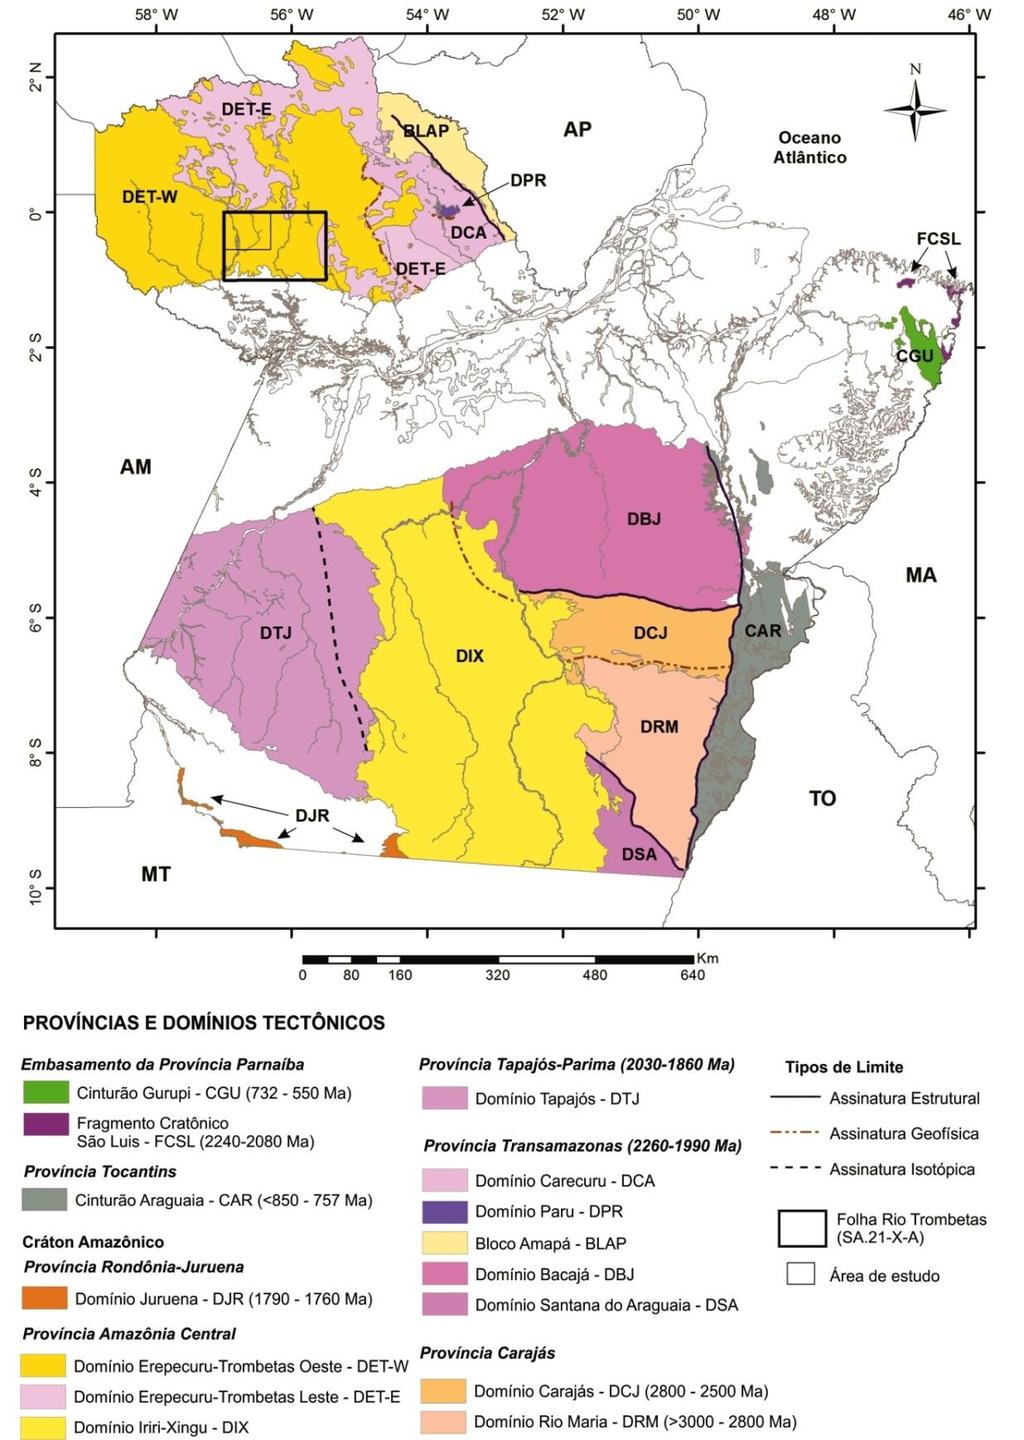 Contexto Geológico Regional 26 Figura 5 - Províncias e domínios tectônicos do Estado do Pará, com destaque às áreas da Folha Rio